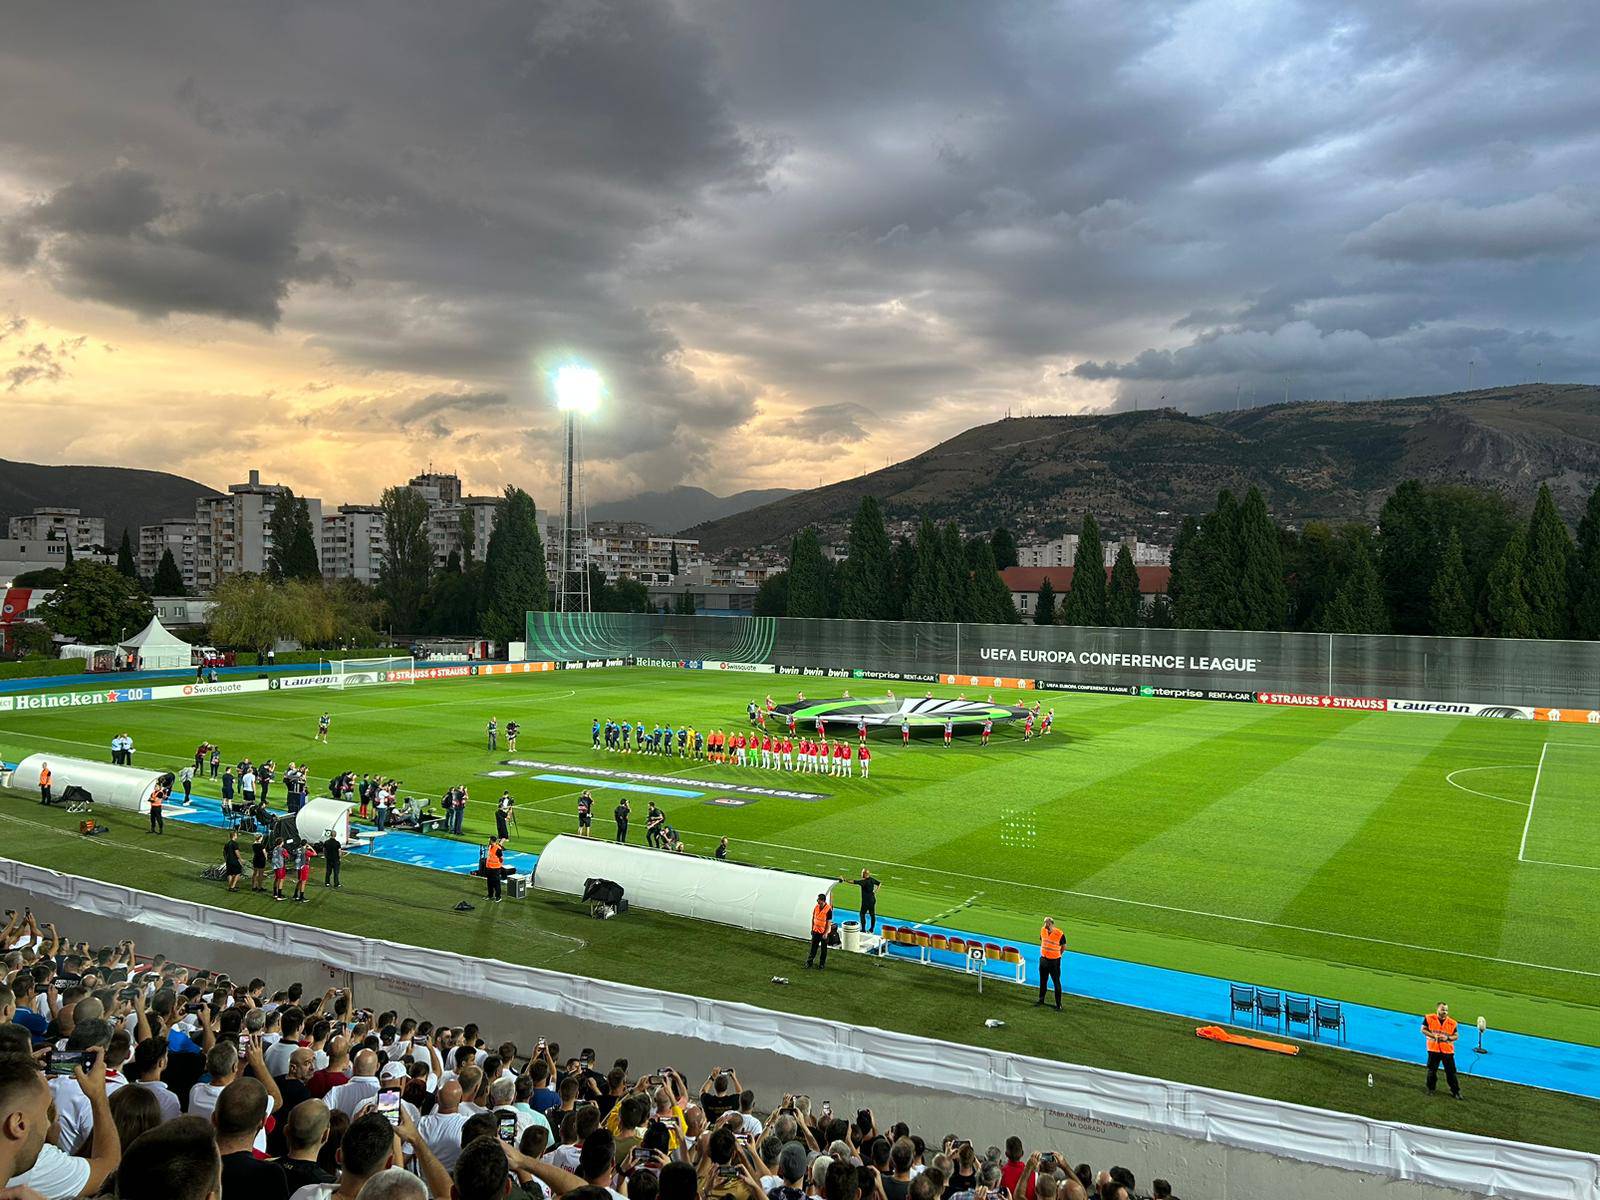 VIDEO Kakav delirij u Mostaru! Zrinjski do ludog preokreta u povijesnoj europskoj utakmici